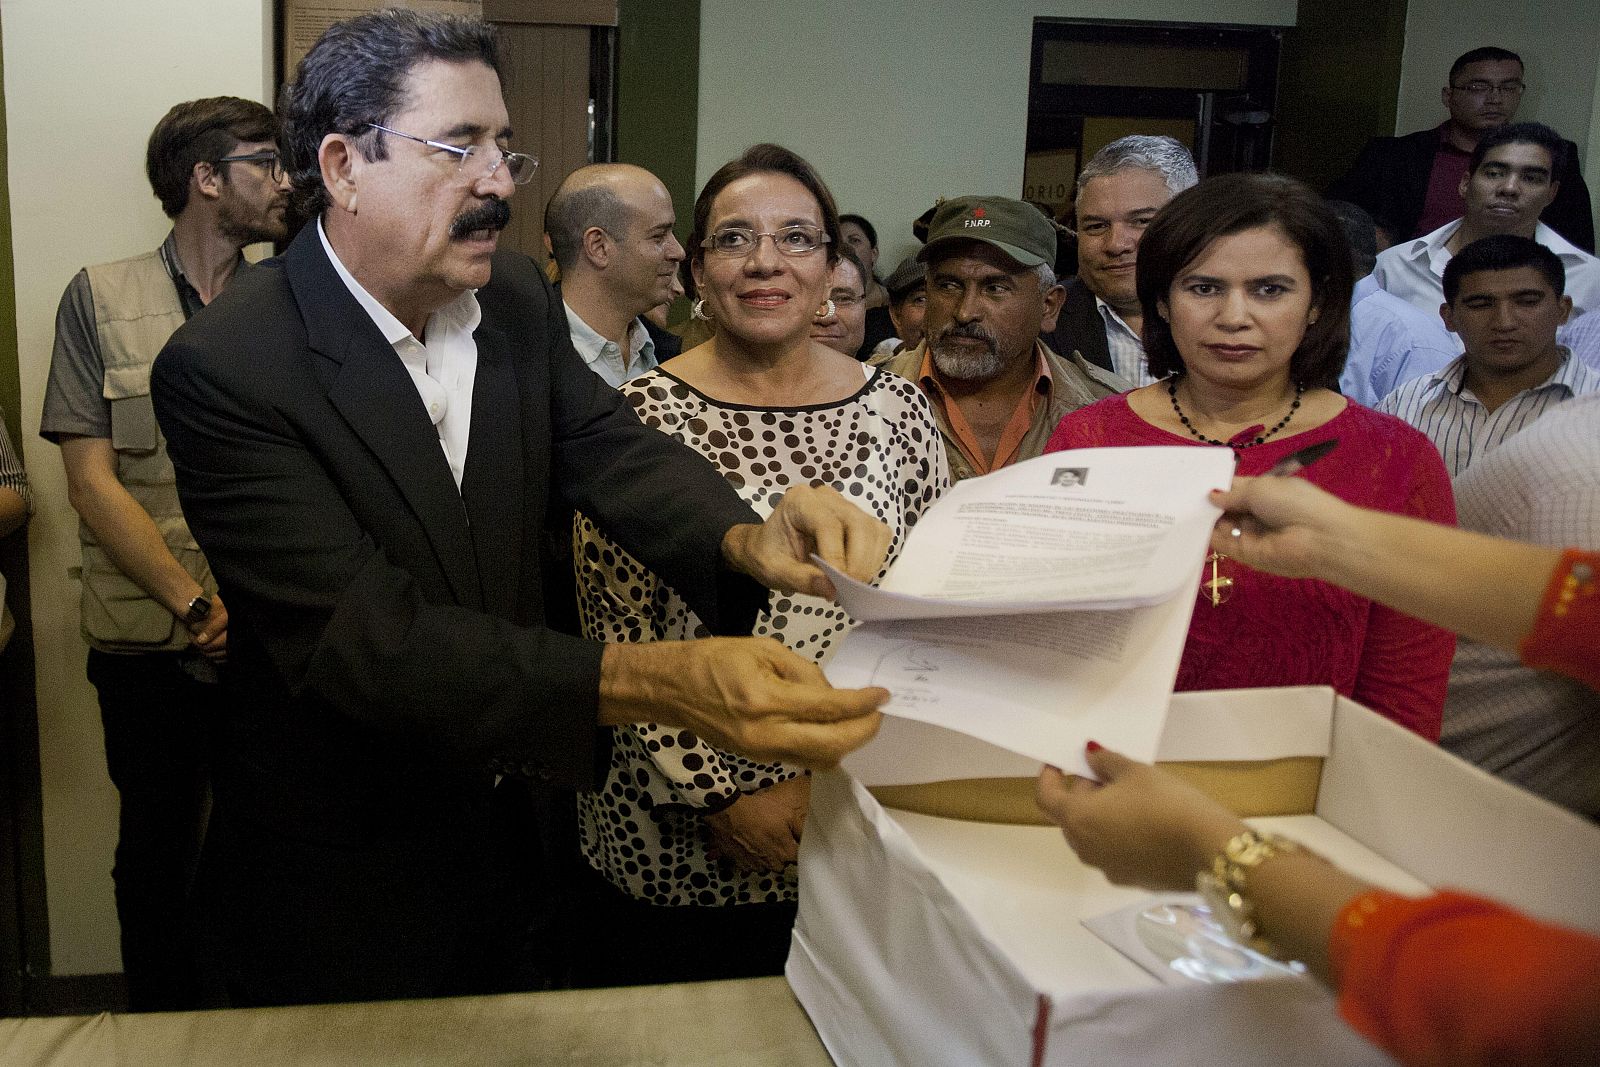 La candidata Xiomara Castro (en el centro con gafas), y su esposo, el expresidente hondureño Manuel Zelaya